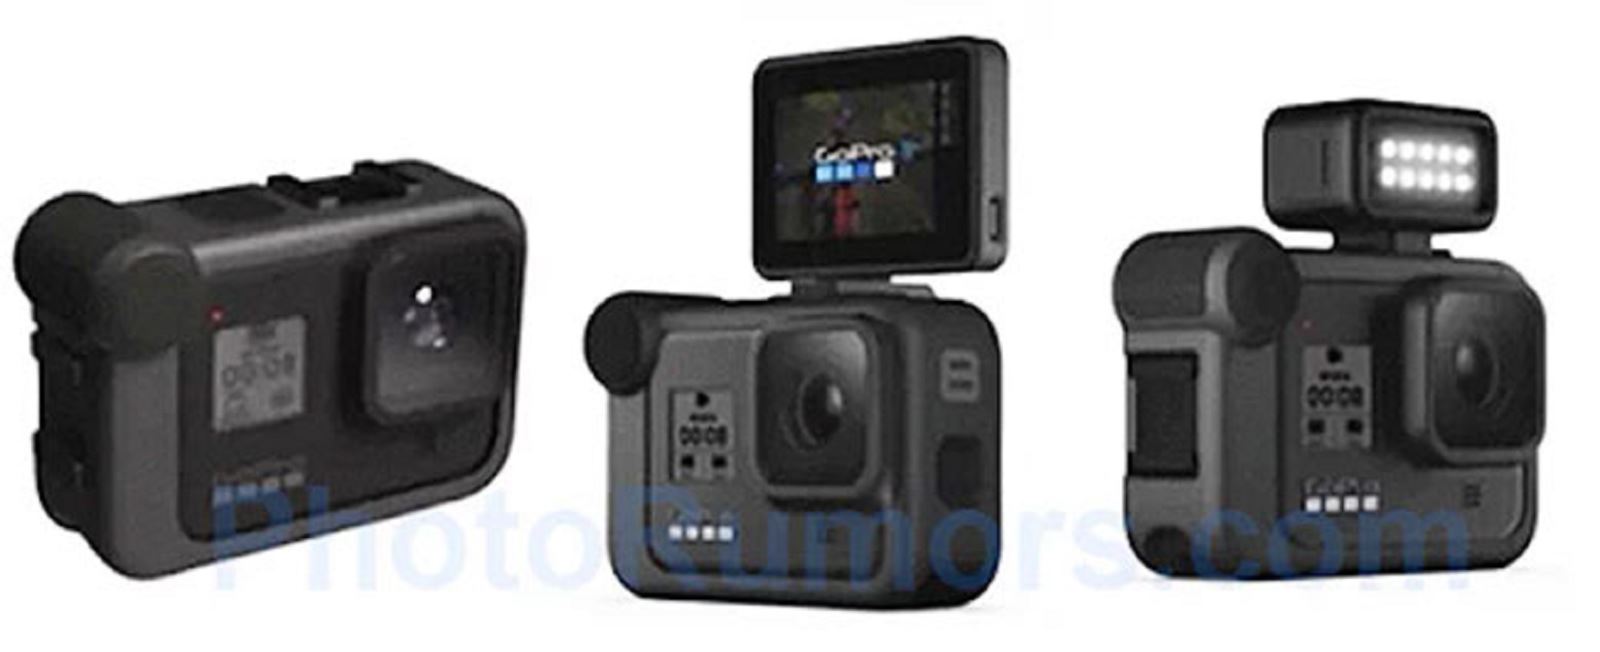 Rò rỉ hình ảnh GoPro Hero 8, sẽ quay video 4K ở tốc độ 120fps